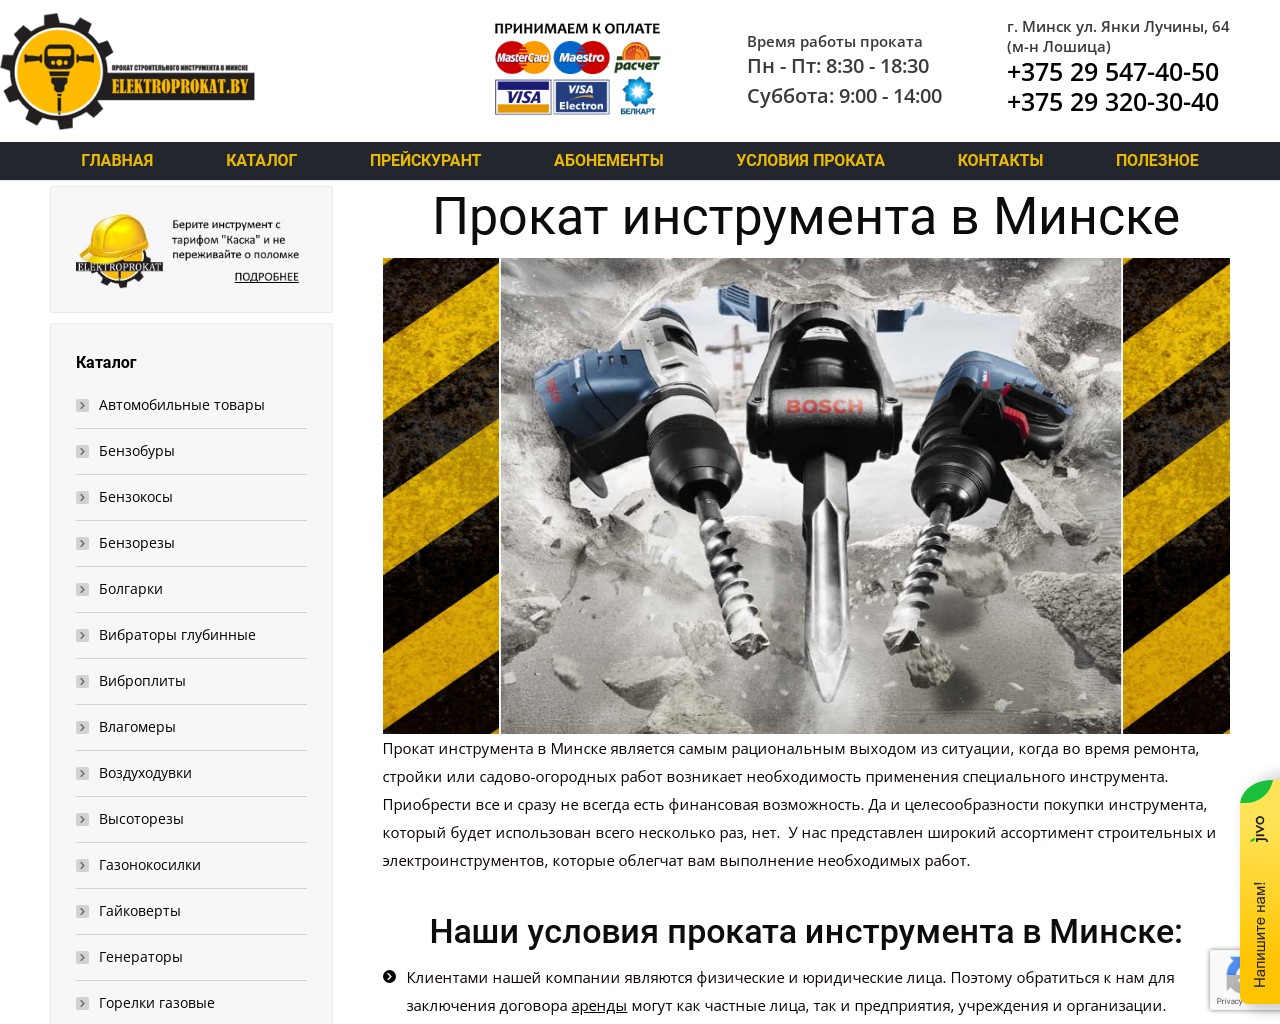 Изображение скриншота сайта - Прокат и аренда электроинструментов для ремонтных работ в Минске